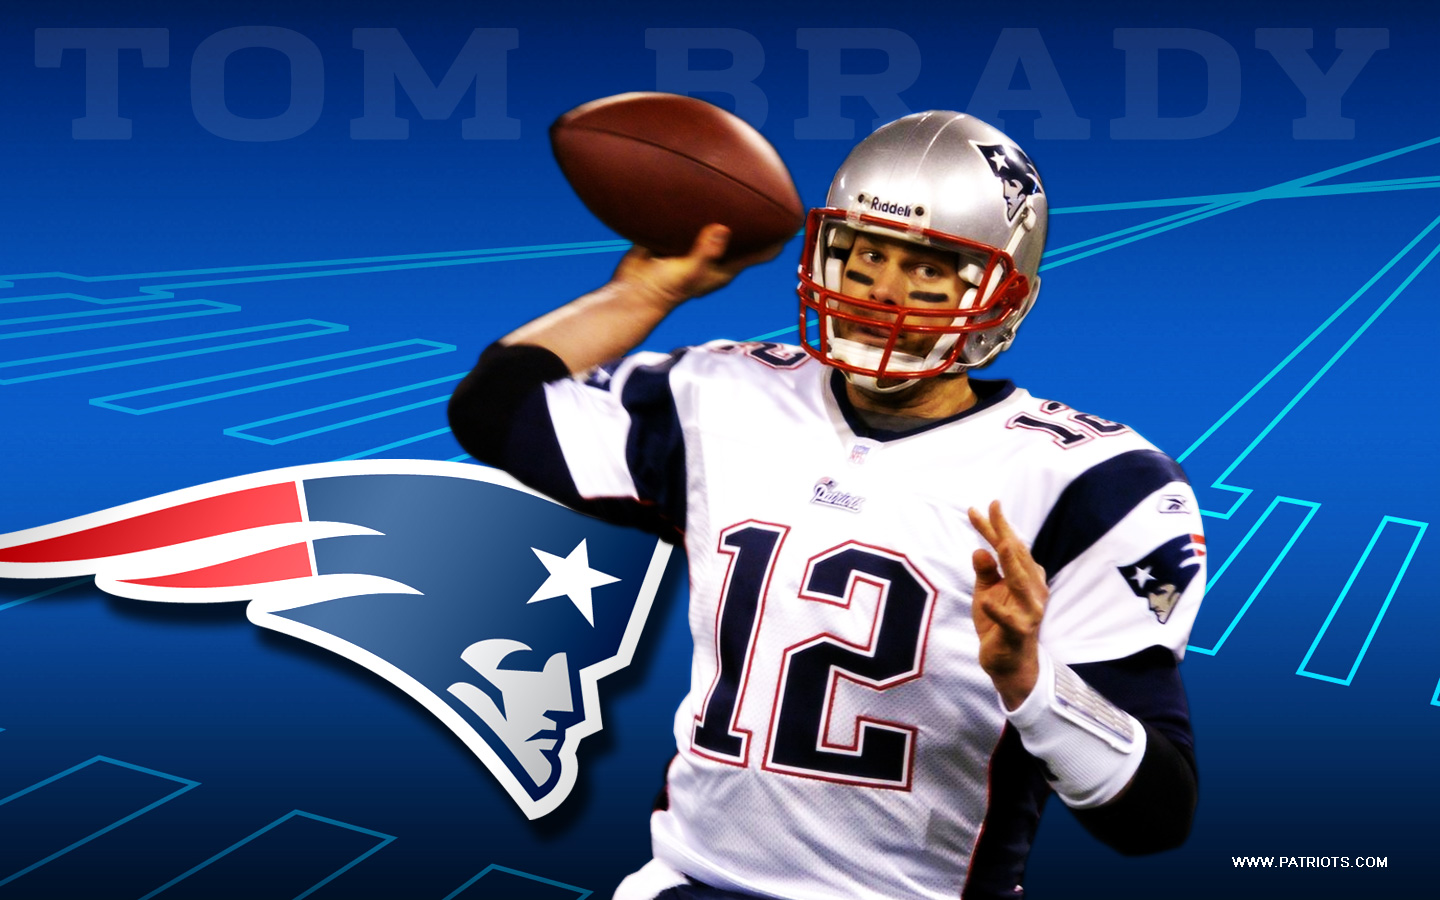 Patriots Tom Brady Backgrounds On Wallpaper Hd 1440 - Super Bowl 2018 Eagles Vs Patriots - HD Wallpaper 